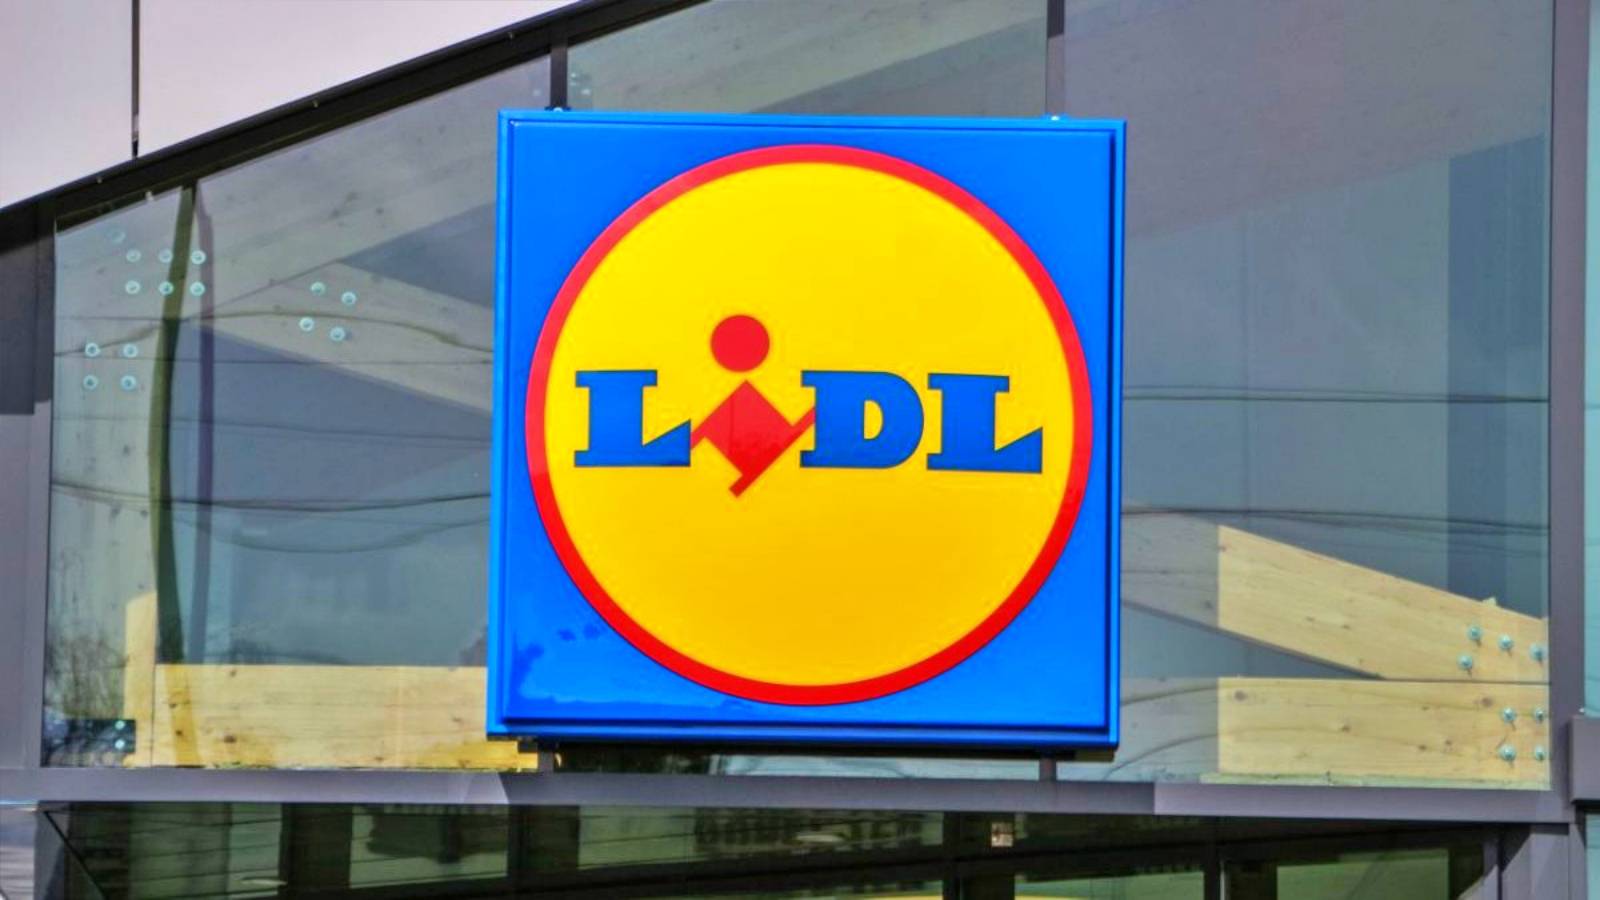 LIDL Romania Tutti i clienti rumeni informati delle modifiche ai nuovi negozi